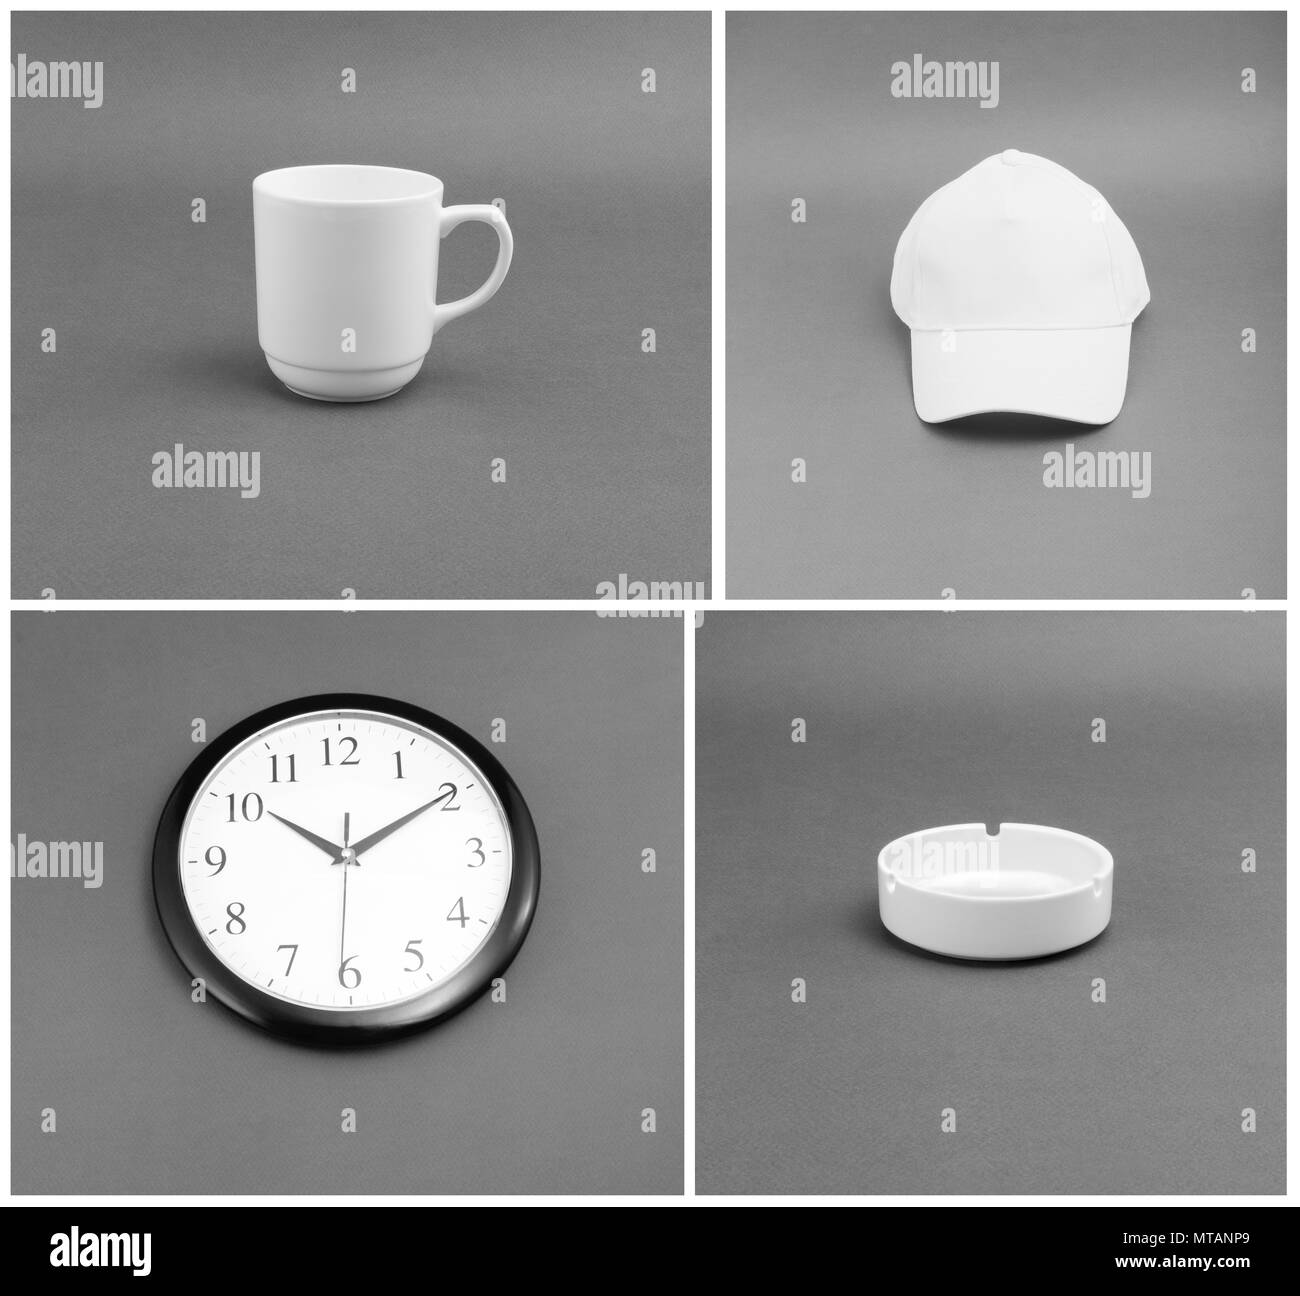 Weiße Objekte der Identität - Schale, Uhren, Kappe, Aschenbecher auf grauem Hintergrund Stockfoto